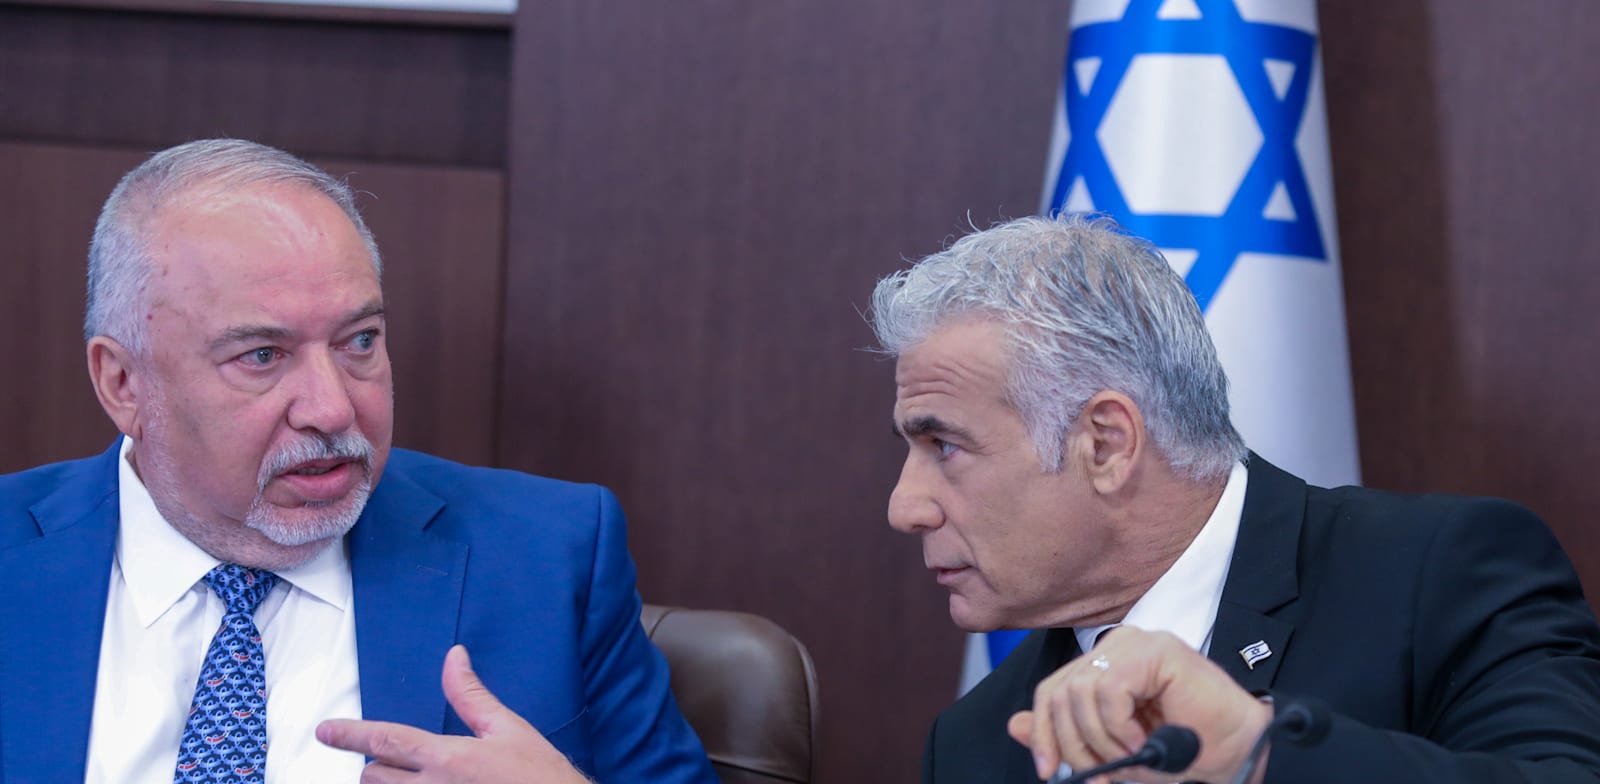 ראש הממשלה יאיר לפיד ושר האוצר אביגדור ליברמן / צילום: מארק ישראל סלם, "ג'רוזלם פוסט" 